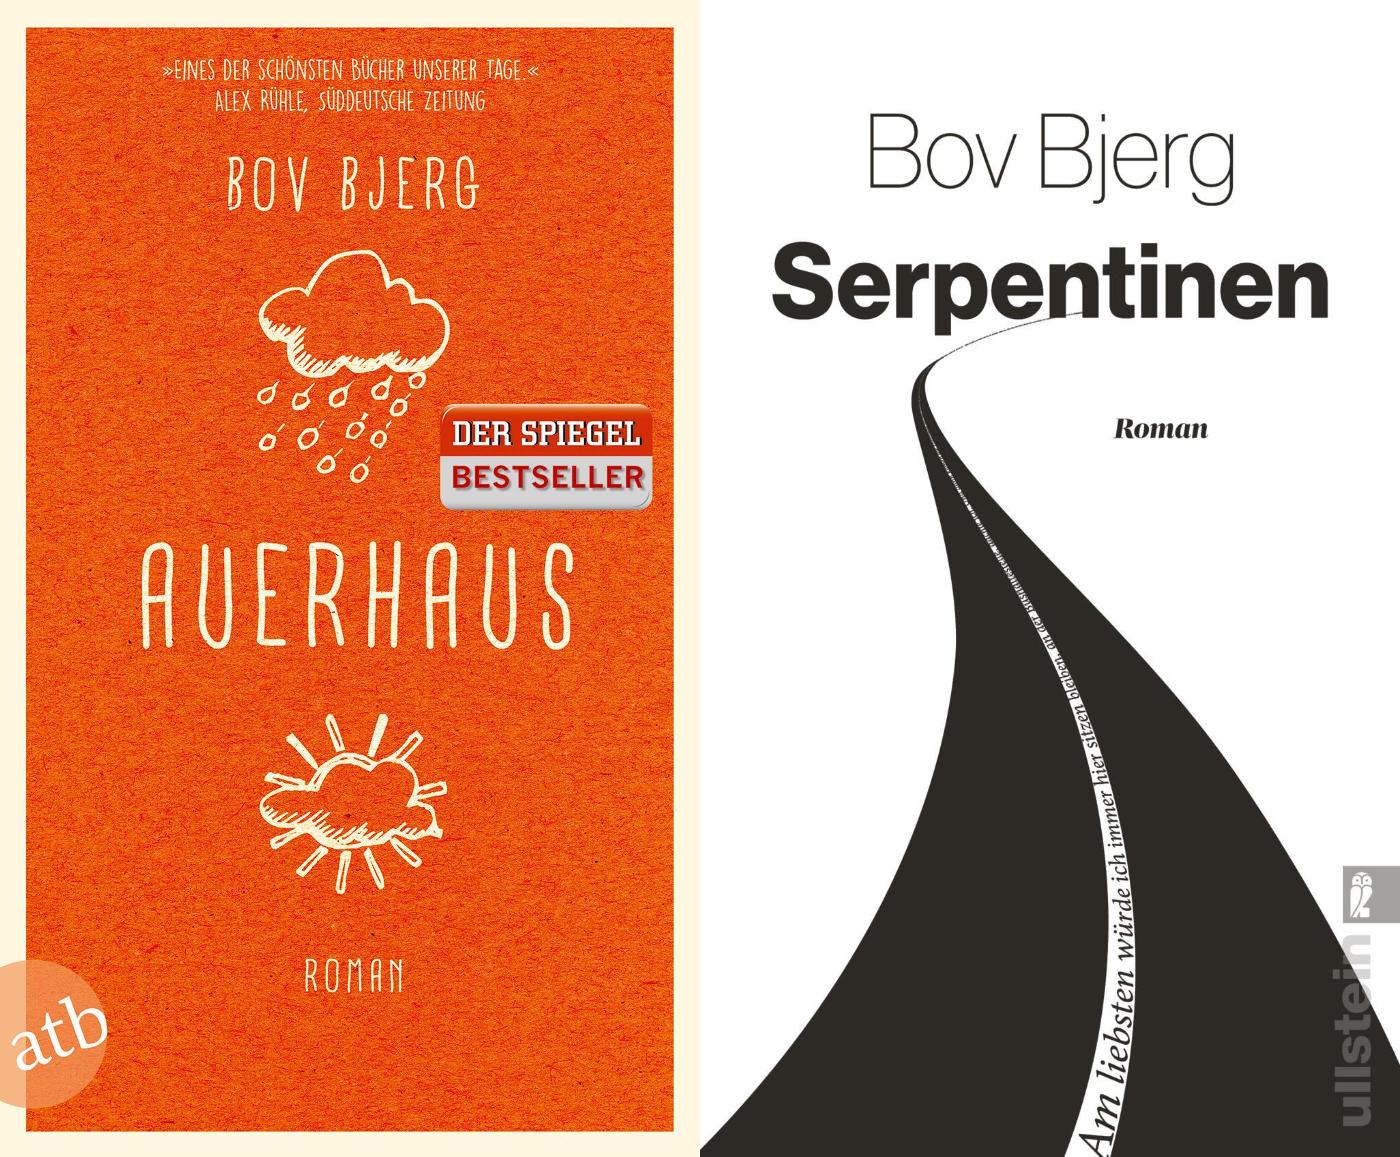 Auerhaus + Serpentinen von Bov Bjerg im Set + 1 exklusives Postkartenset